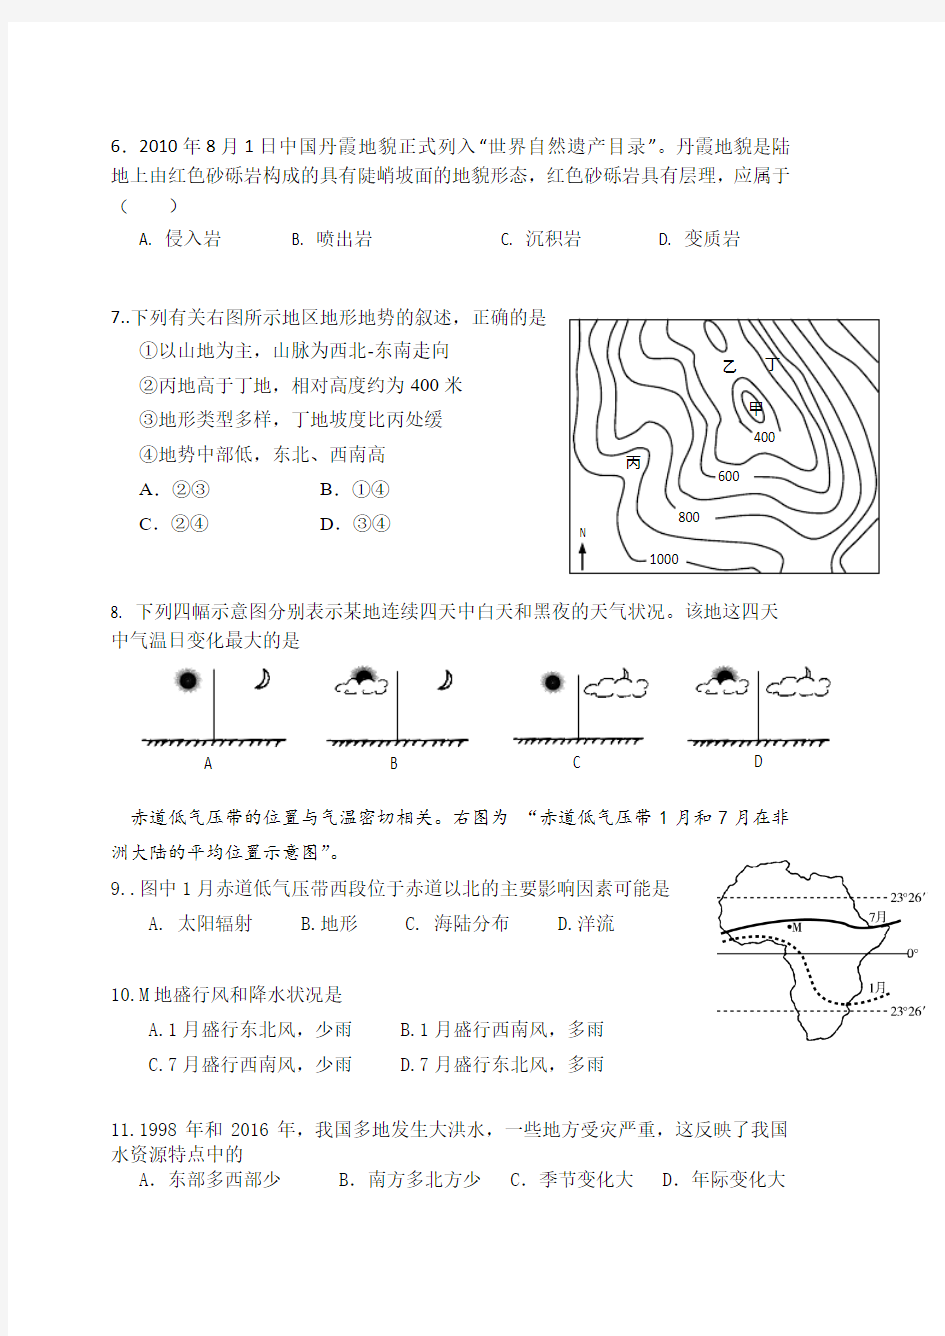 上海市中学2017-2018年等级考第一学期高二练习地理卷